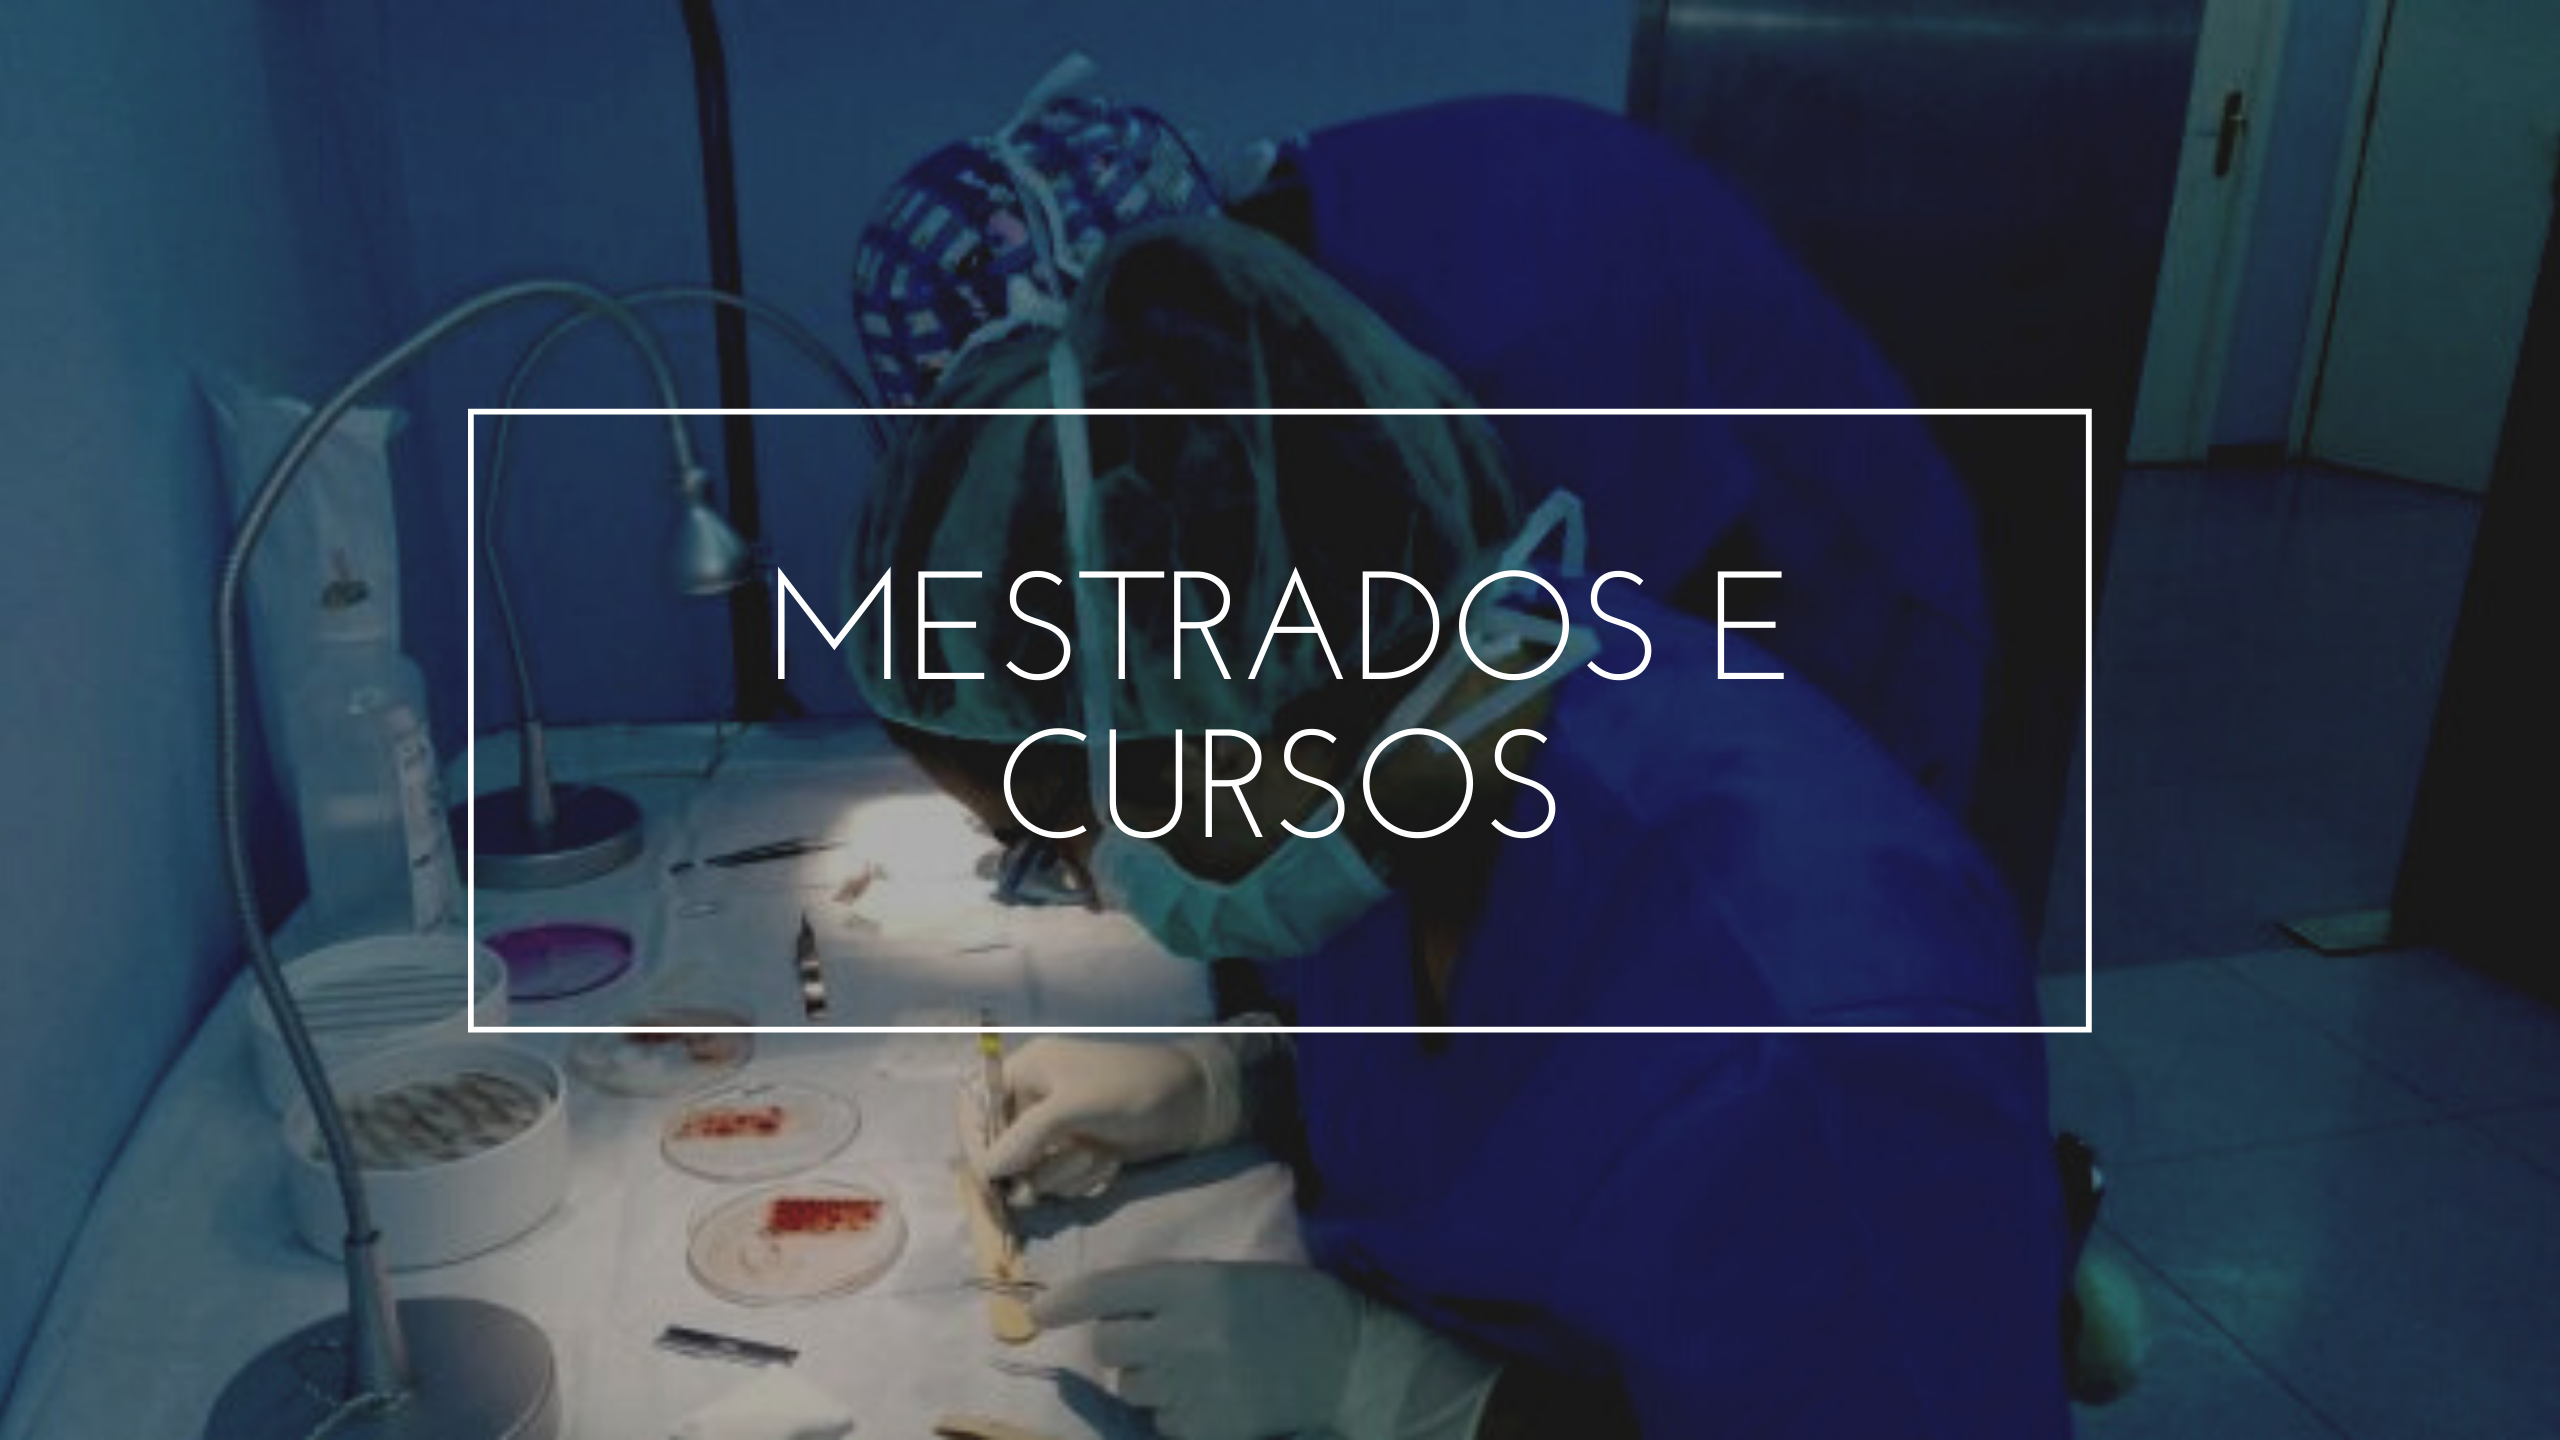 MESTRADOS E CURSOS